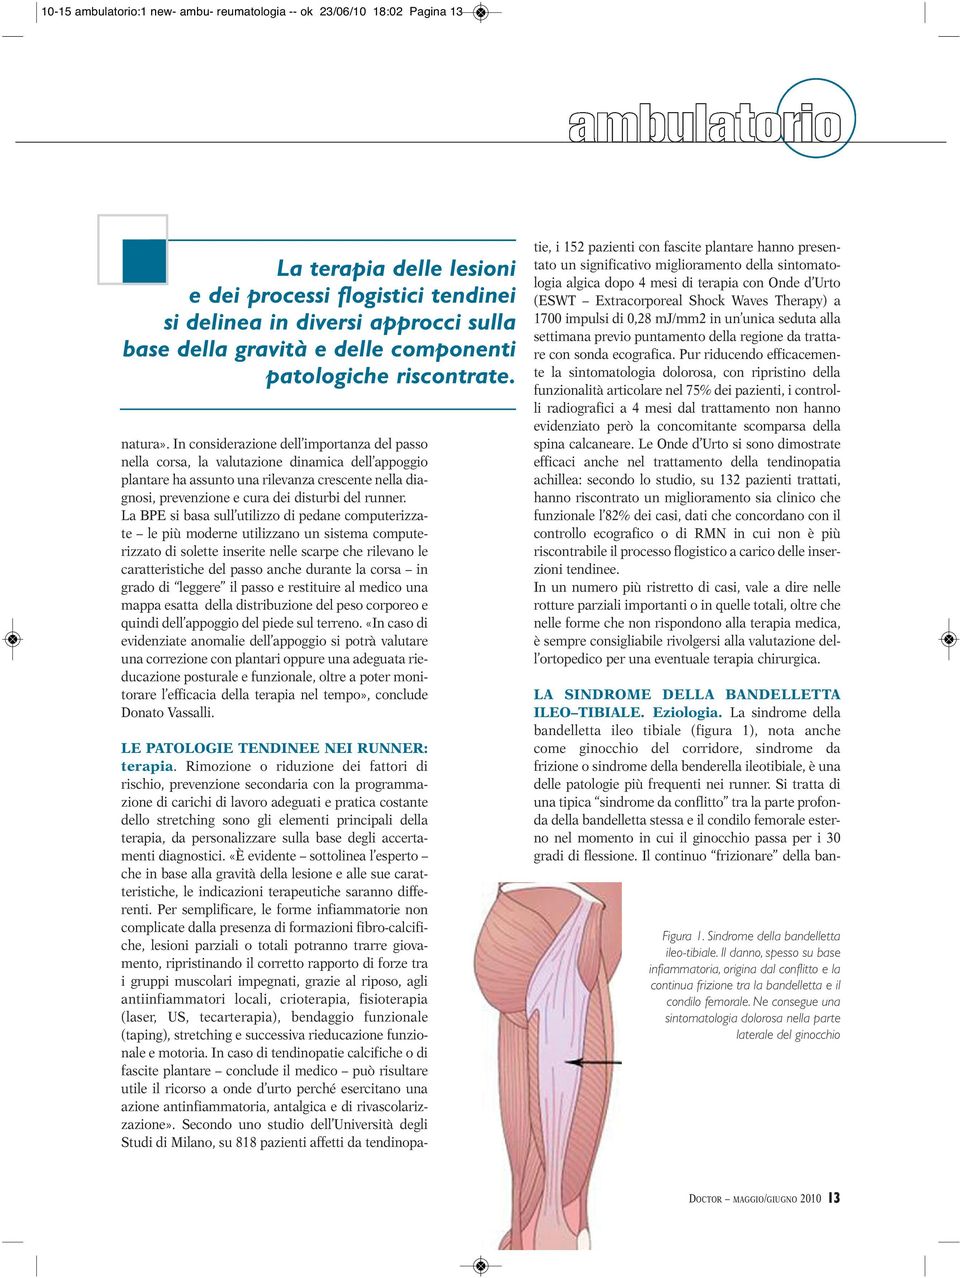 La sindrome della bandelletta ileo tibiale (figura 1), nota anche come ginocchio del corridore, sindrome da frizione o sindrome della benderella ileotibiale, è una delle patologie più frequenti nei